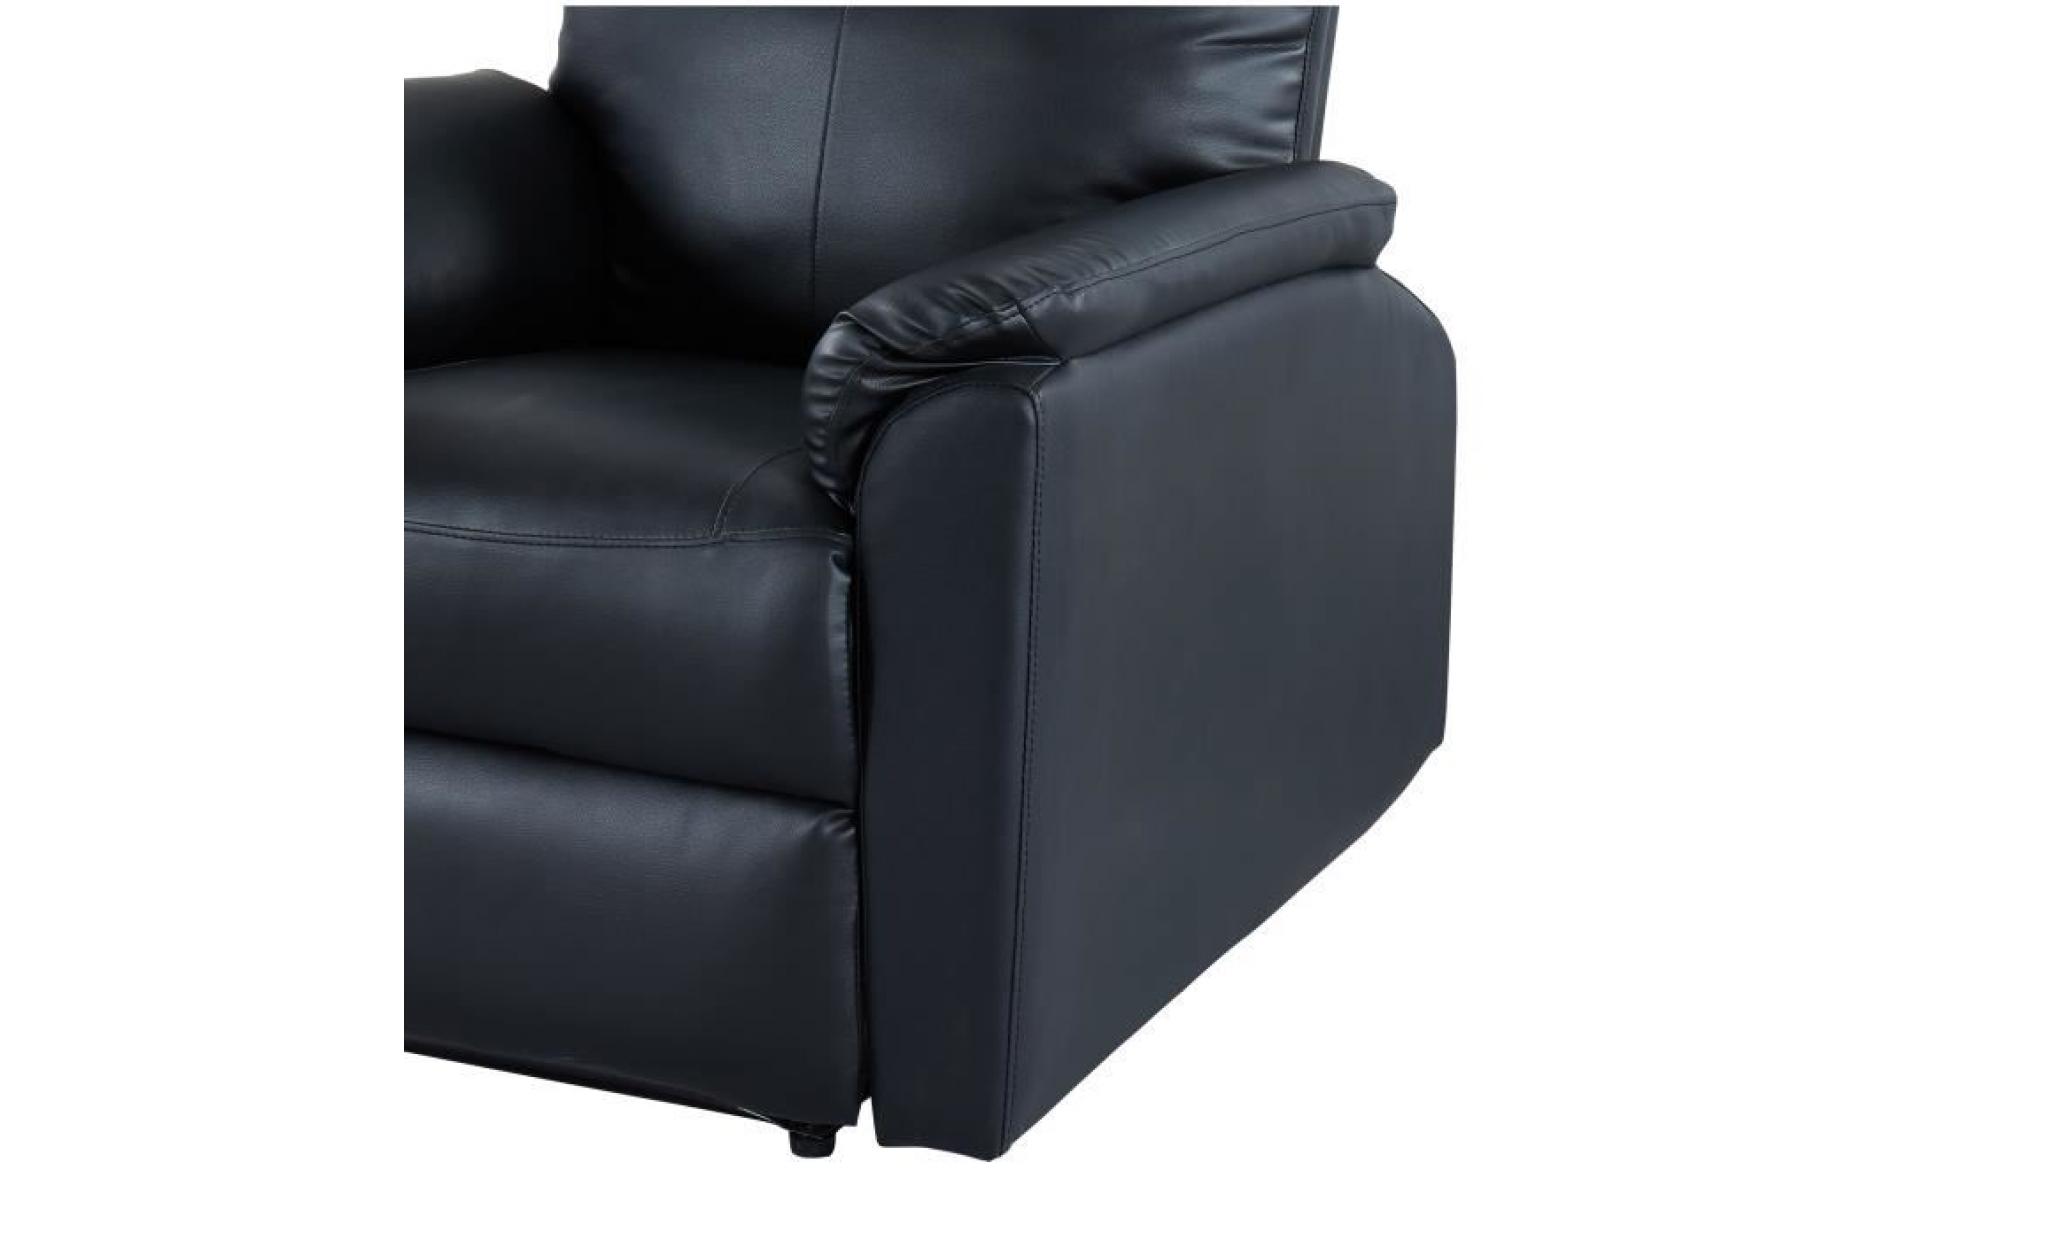 max fauteuil de relaxation   simili pu noir   classique   l 100 x p 93 cm pas cher